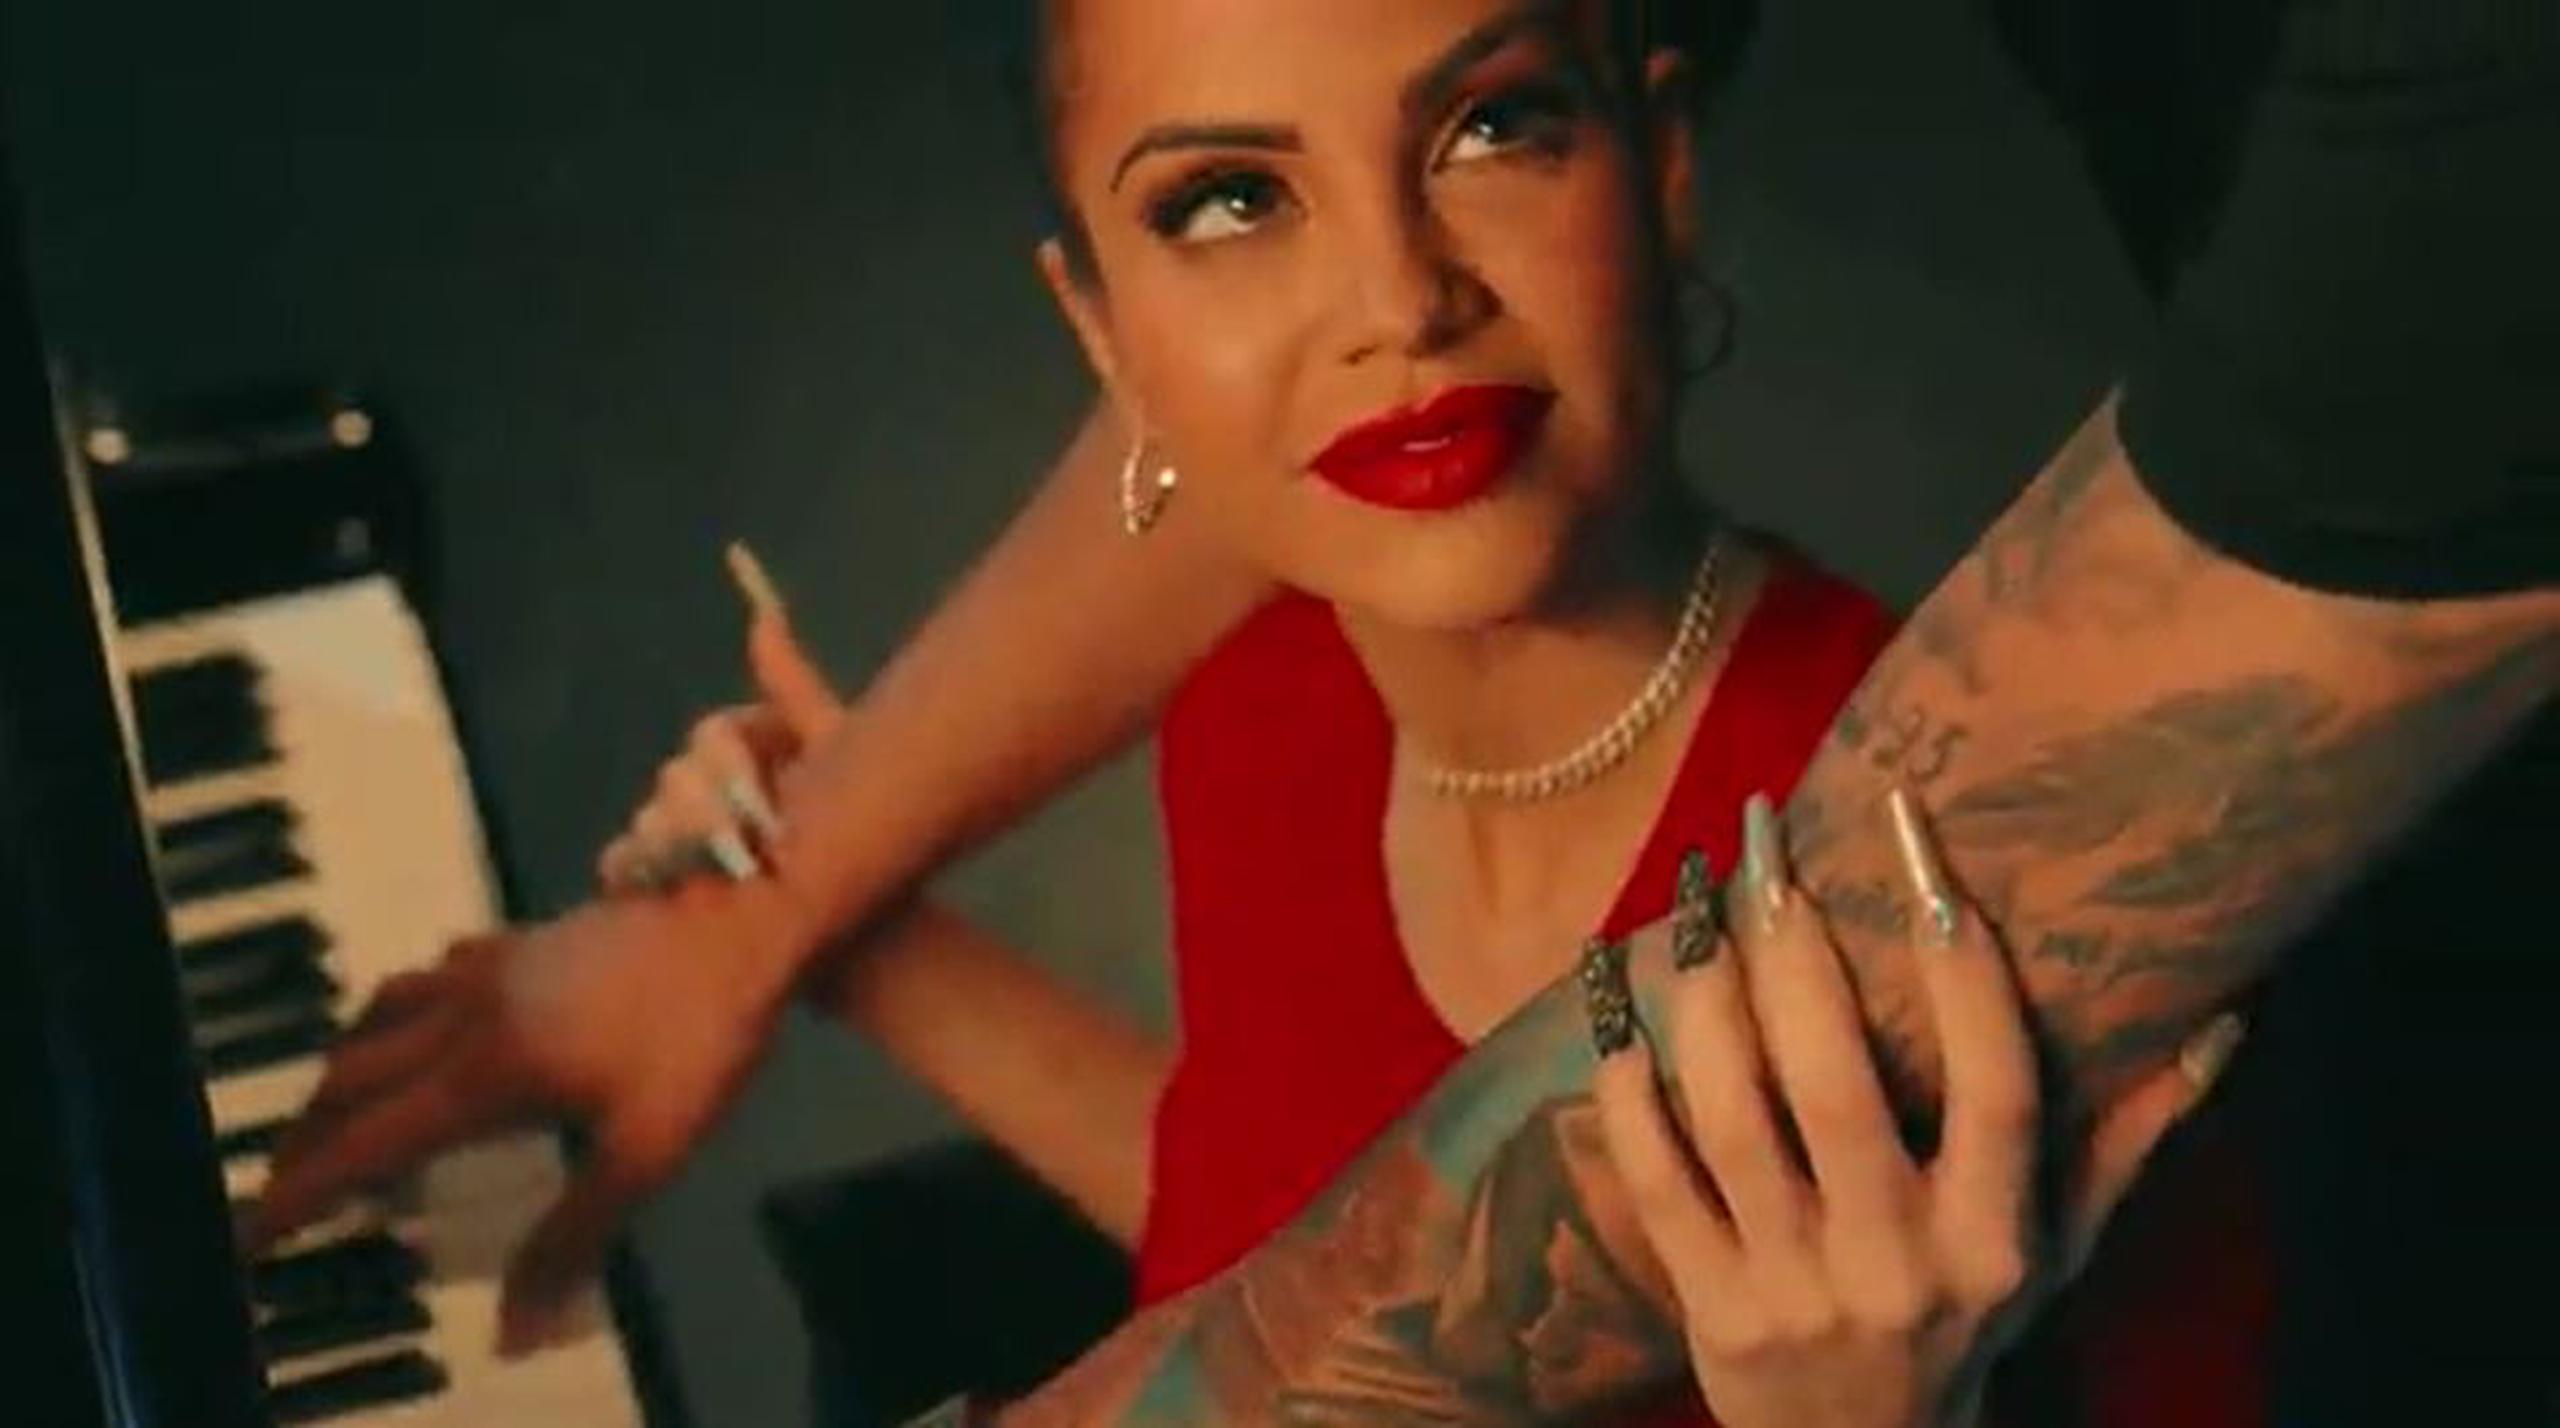 Se sospecha que los tatuajes en el brazo de quien acompaña a la intérprete urbana en el vídeo son del promotor Raphy Pina.